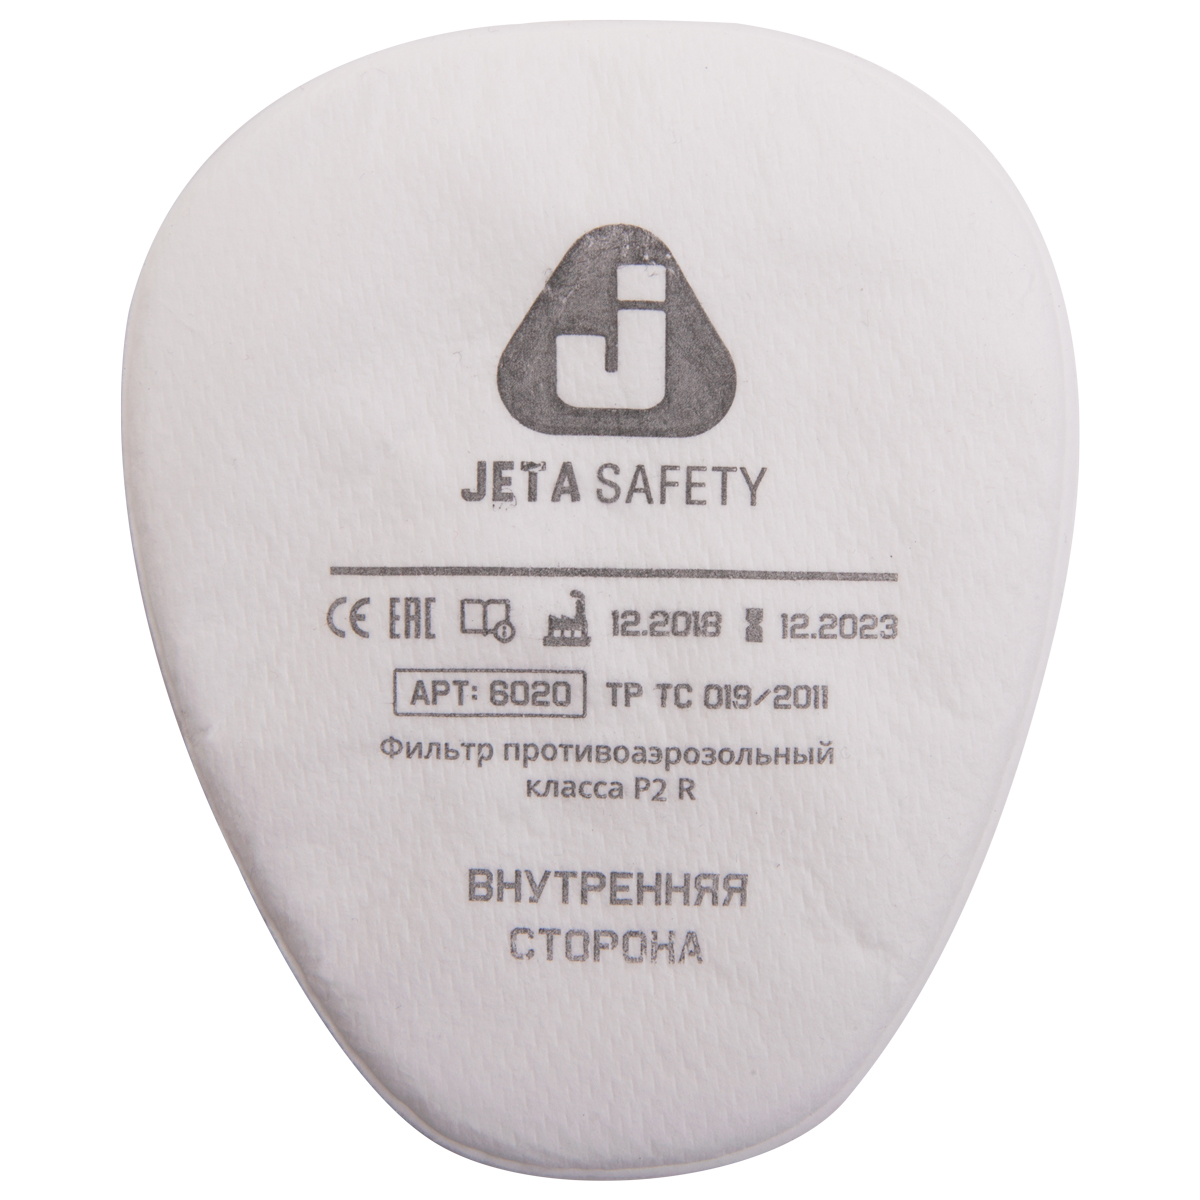 Предфильтры от пыли и аэрозолей P2 R (4 шт.) JETA SAFETY 6020